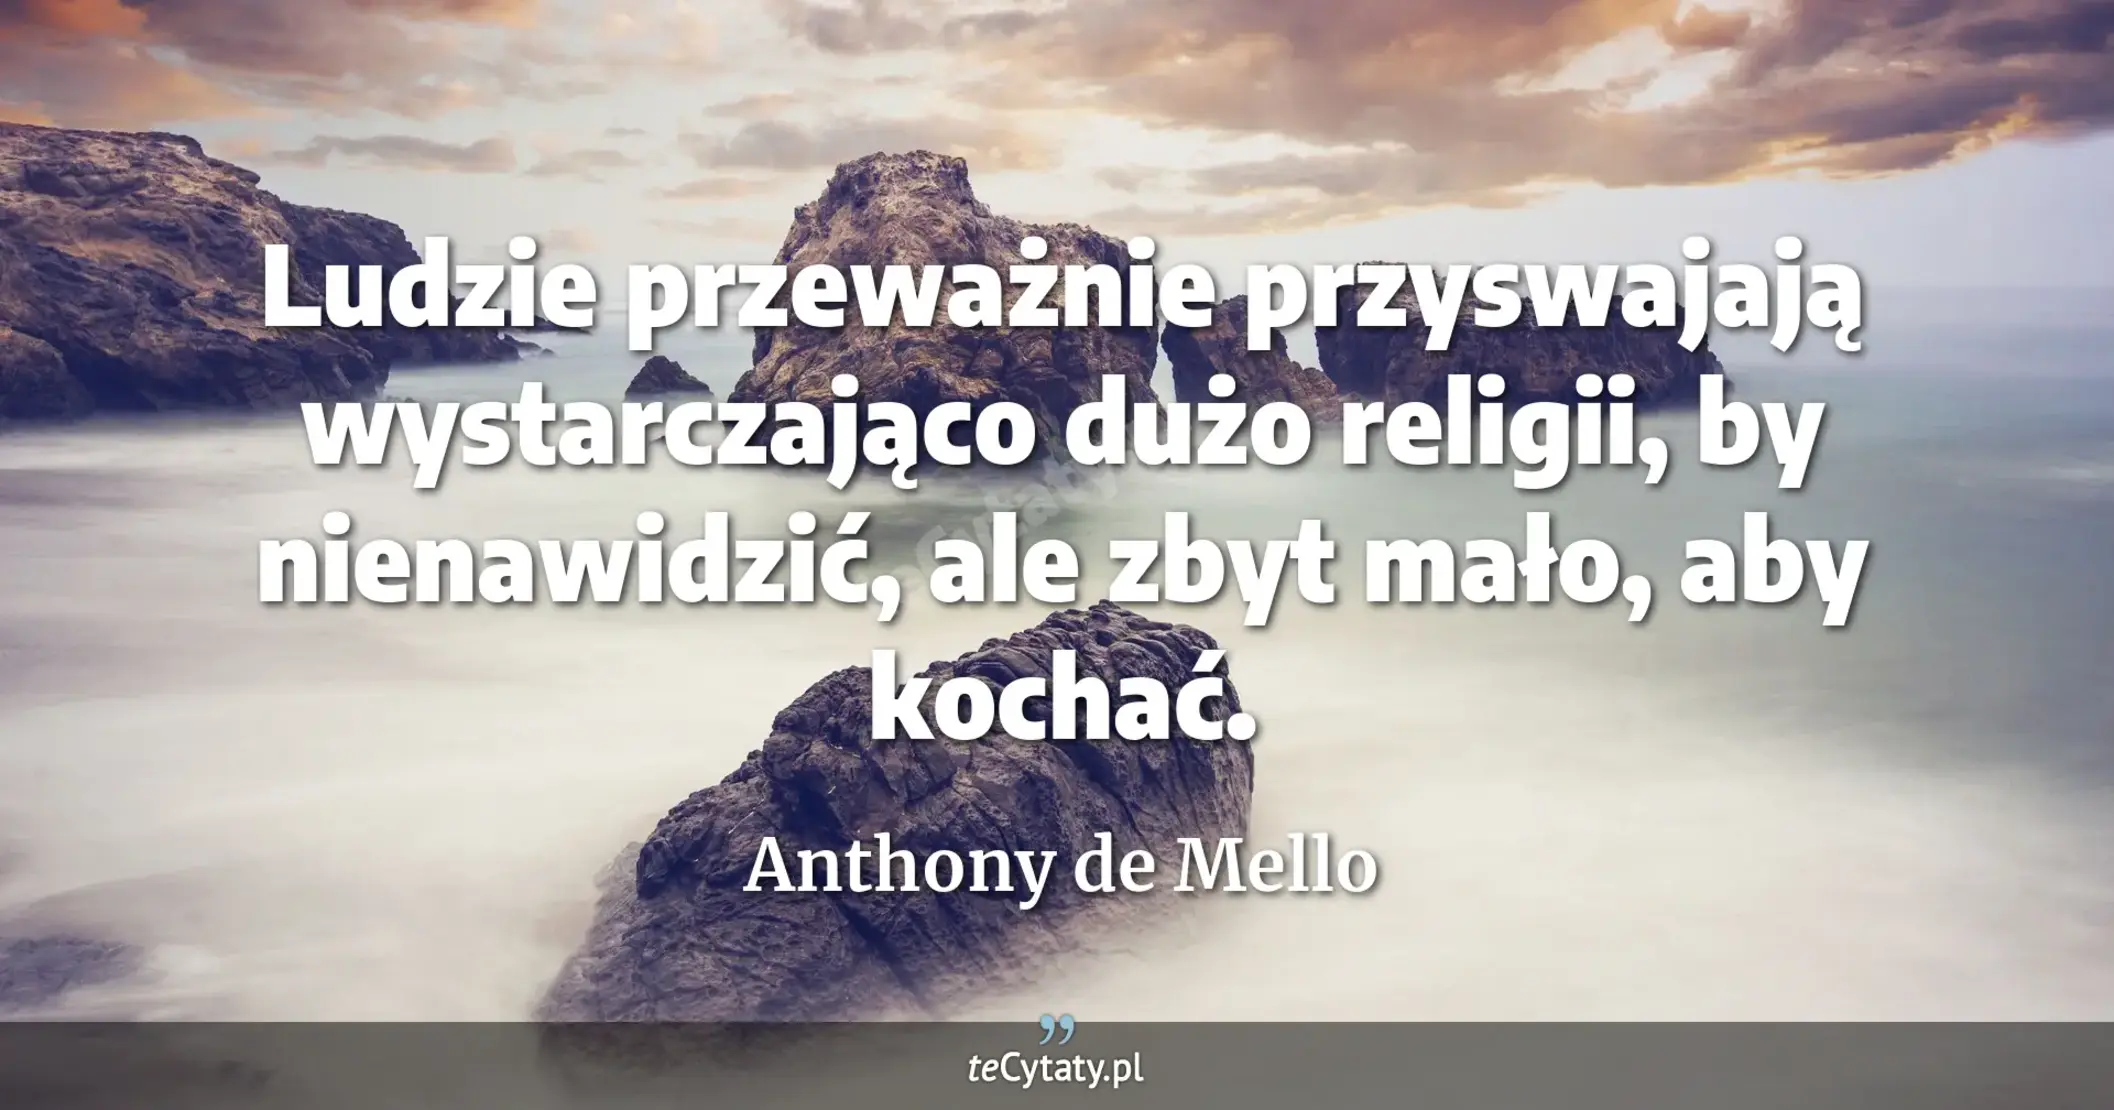 Ludzie przeważnie przyswajają wystarczająco dużo religii, by nienawidzić, ale zbyt mało, aby kochać. - Anthony de Mello